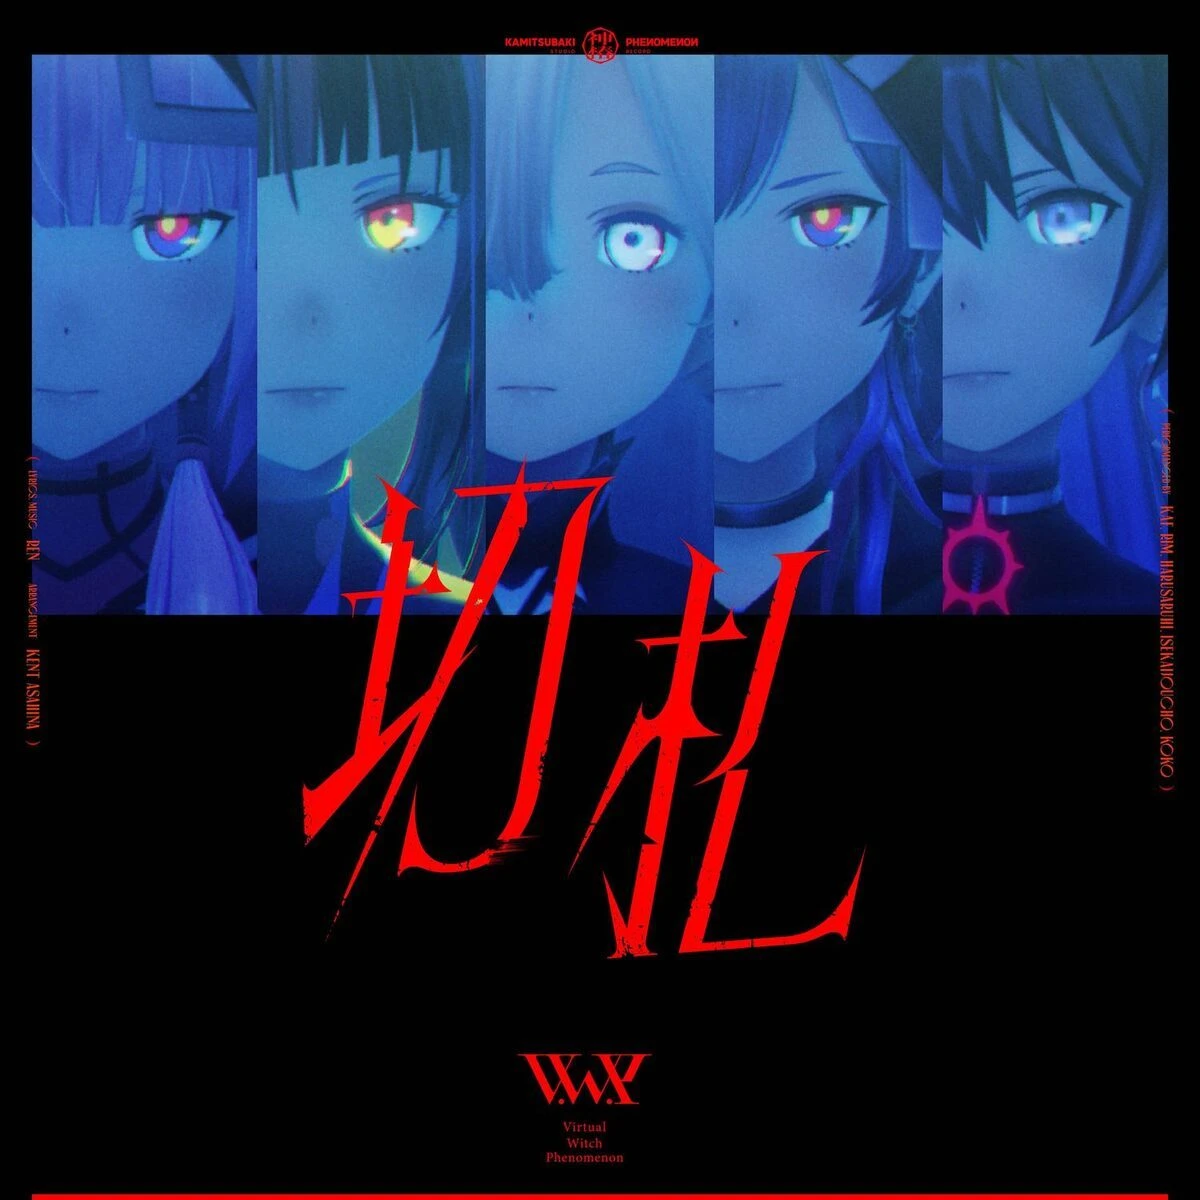 花譜らV.W.Pの新曲、アニメ『カードファイト!! ヴァンガード』OPテーマに決定